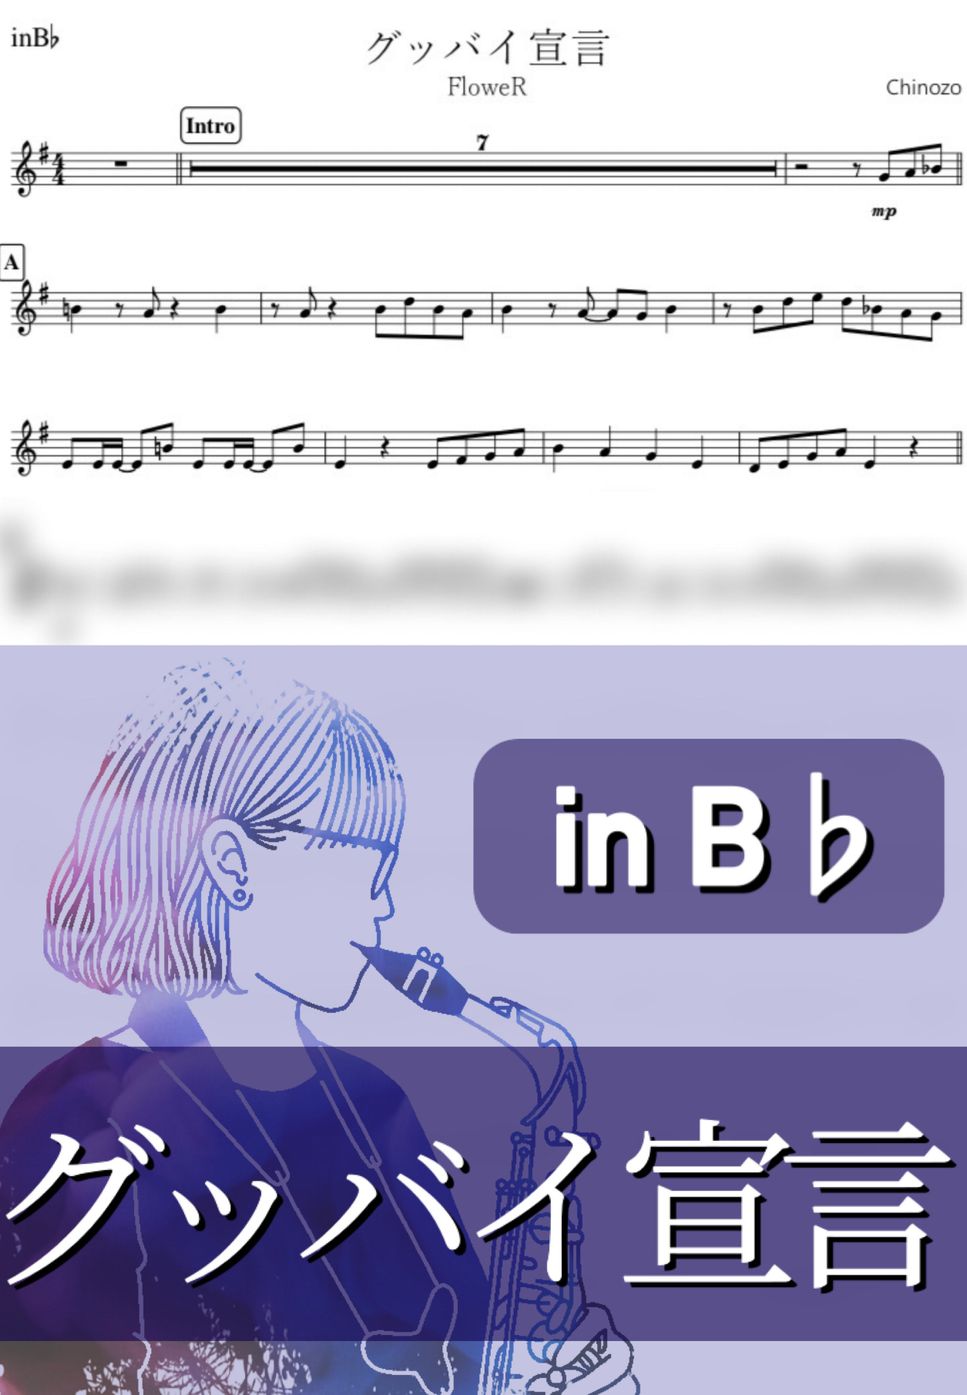 Chinozo - グッバイ宣言 (B♭) by kanamusic